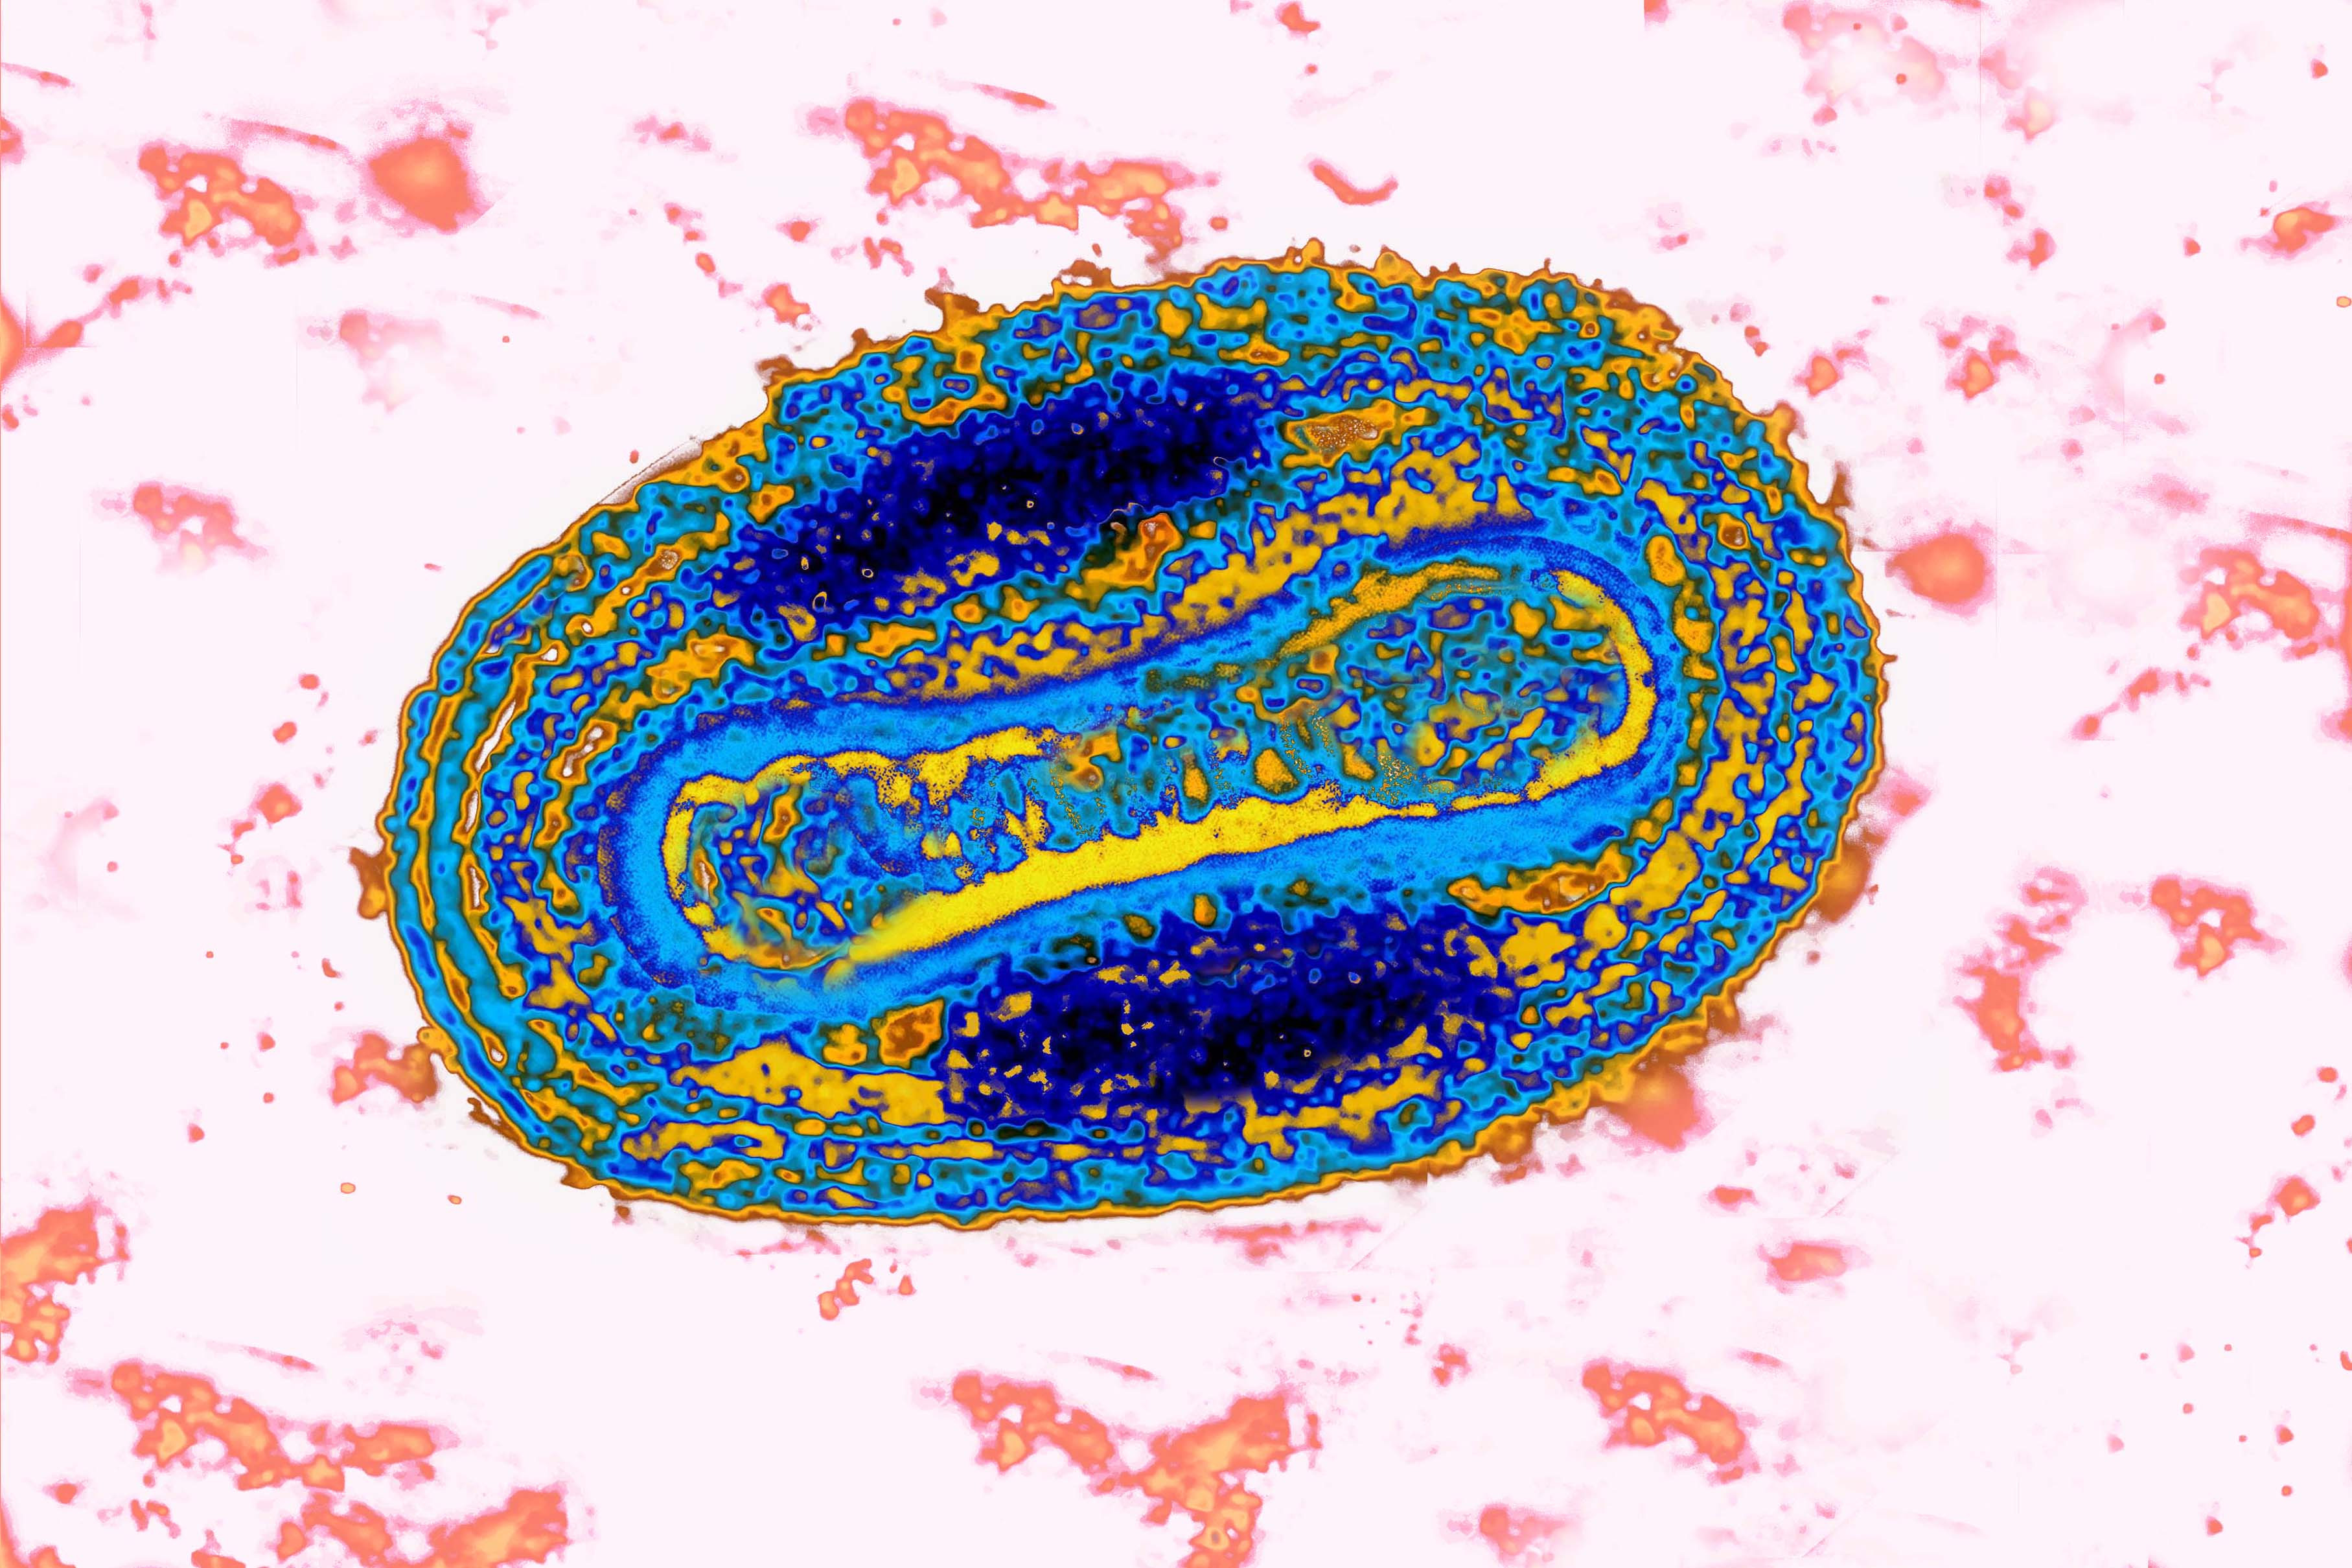 Variole Virus. (BSIP&mdash;UIG via Getty Images)